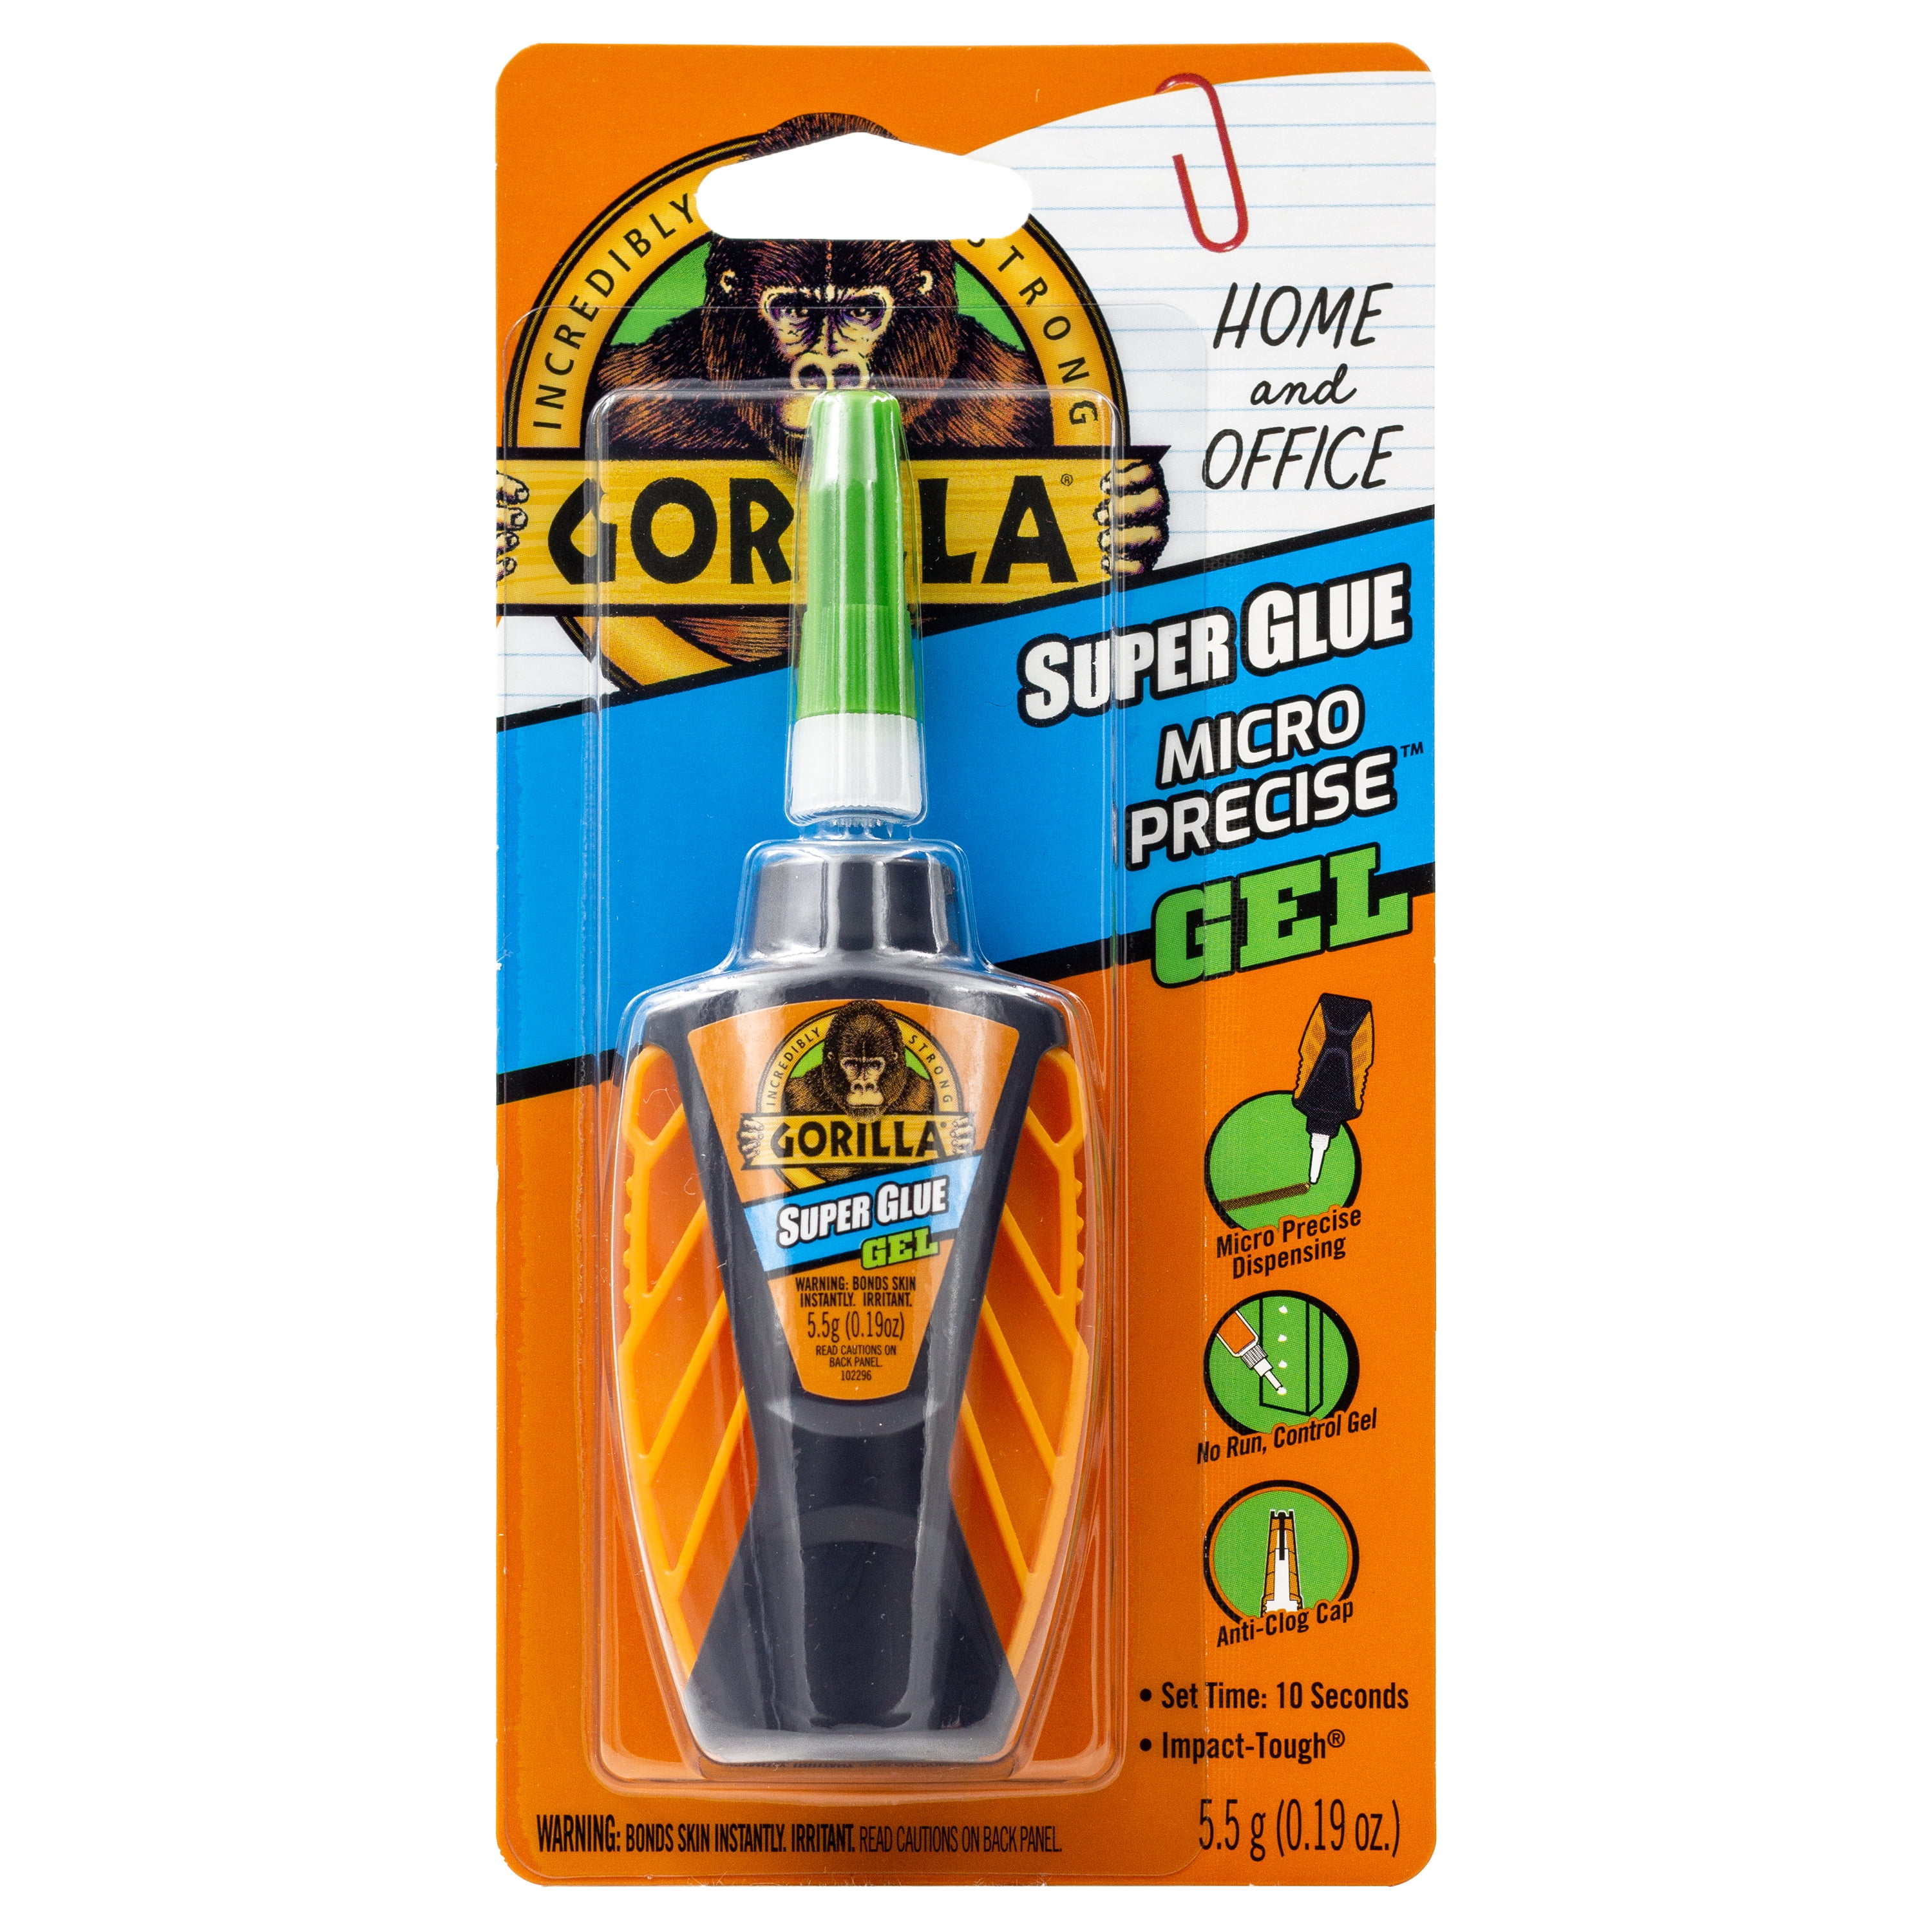 Gorilla Clear Micro Precise Super Glue Gel, 5.5 G Bottle